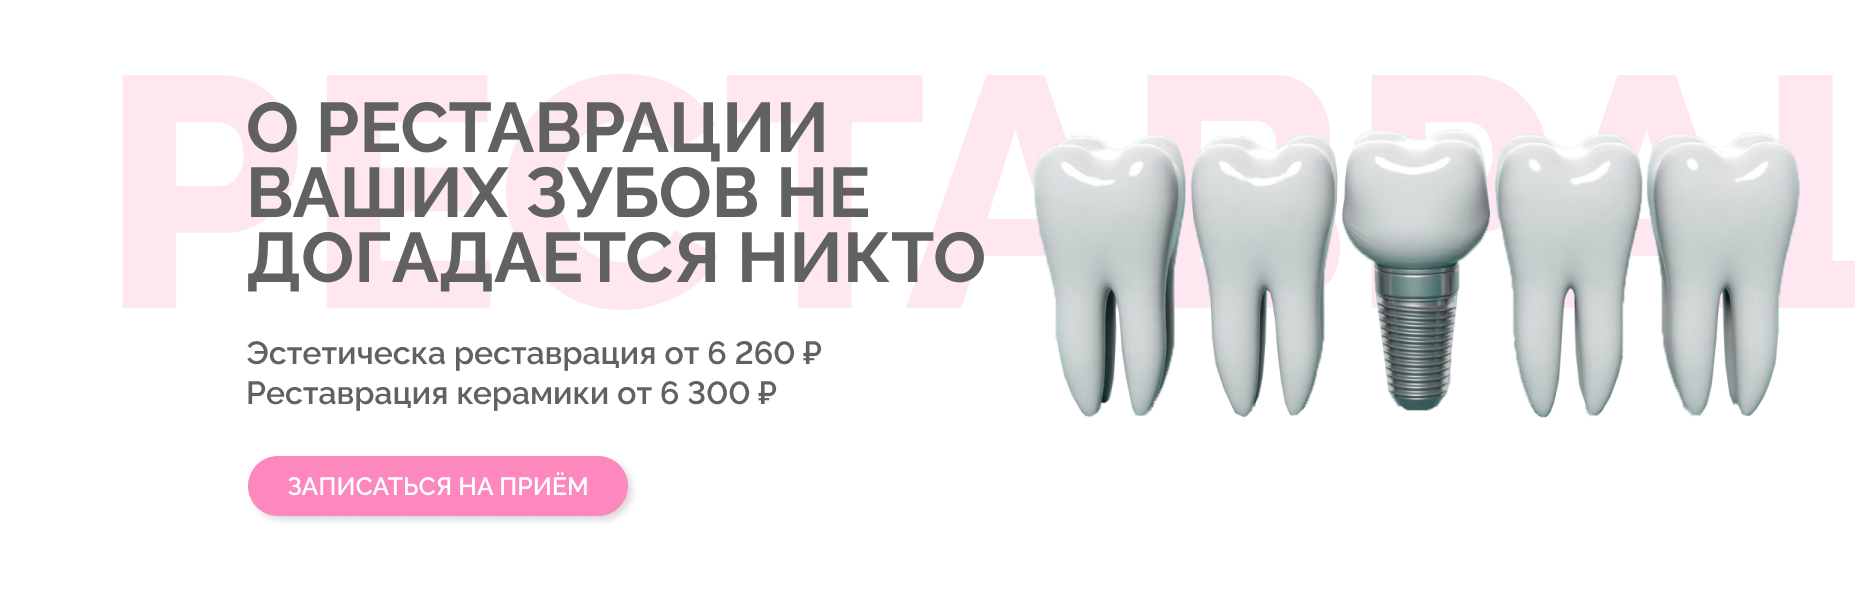 Реставрация переднего зуба в томске Лечение пульпита Томск Камский